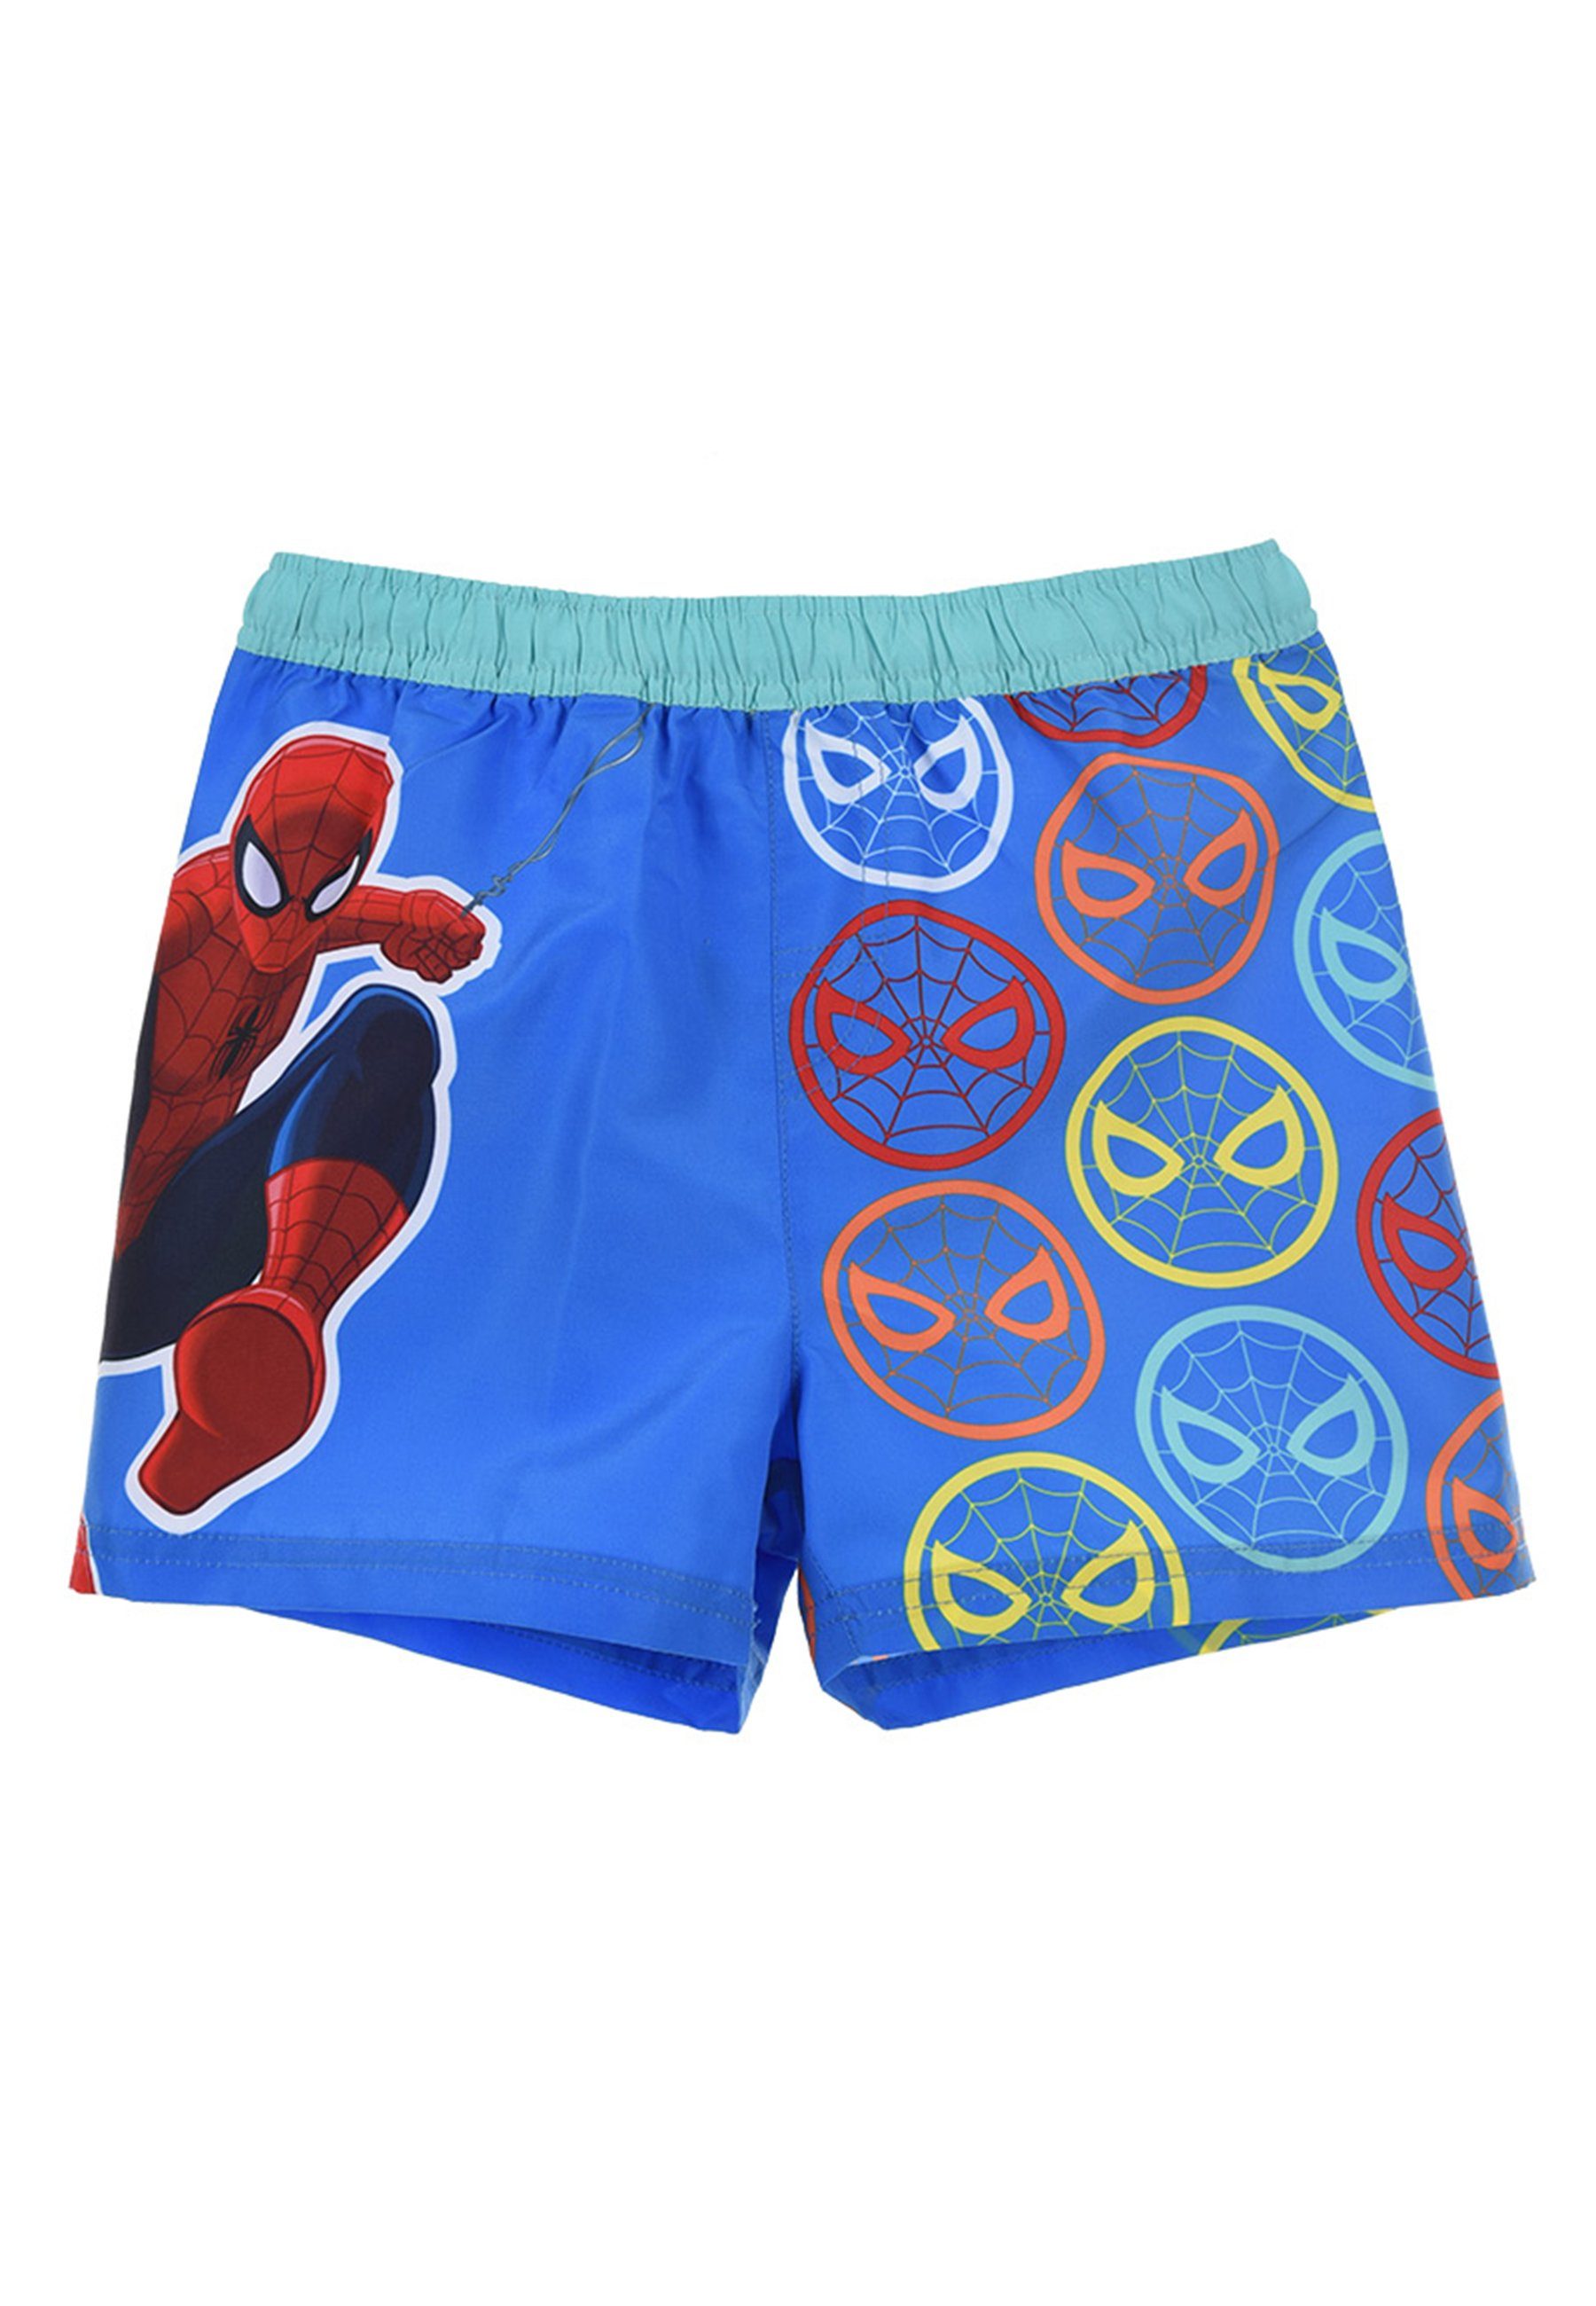 Badepants Spiderman Jungen Bermuda-Shorts Marvel Blau Badehose Badeshorts Kinder